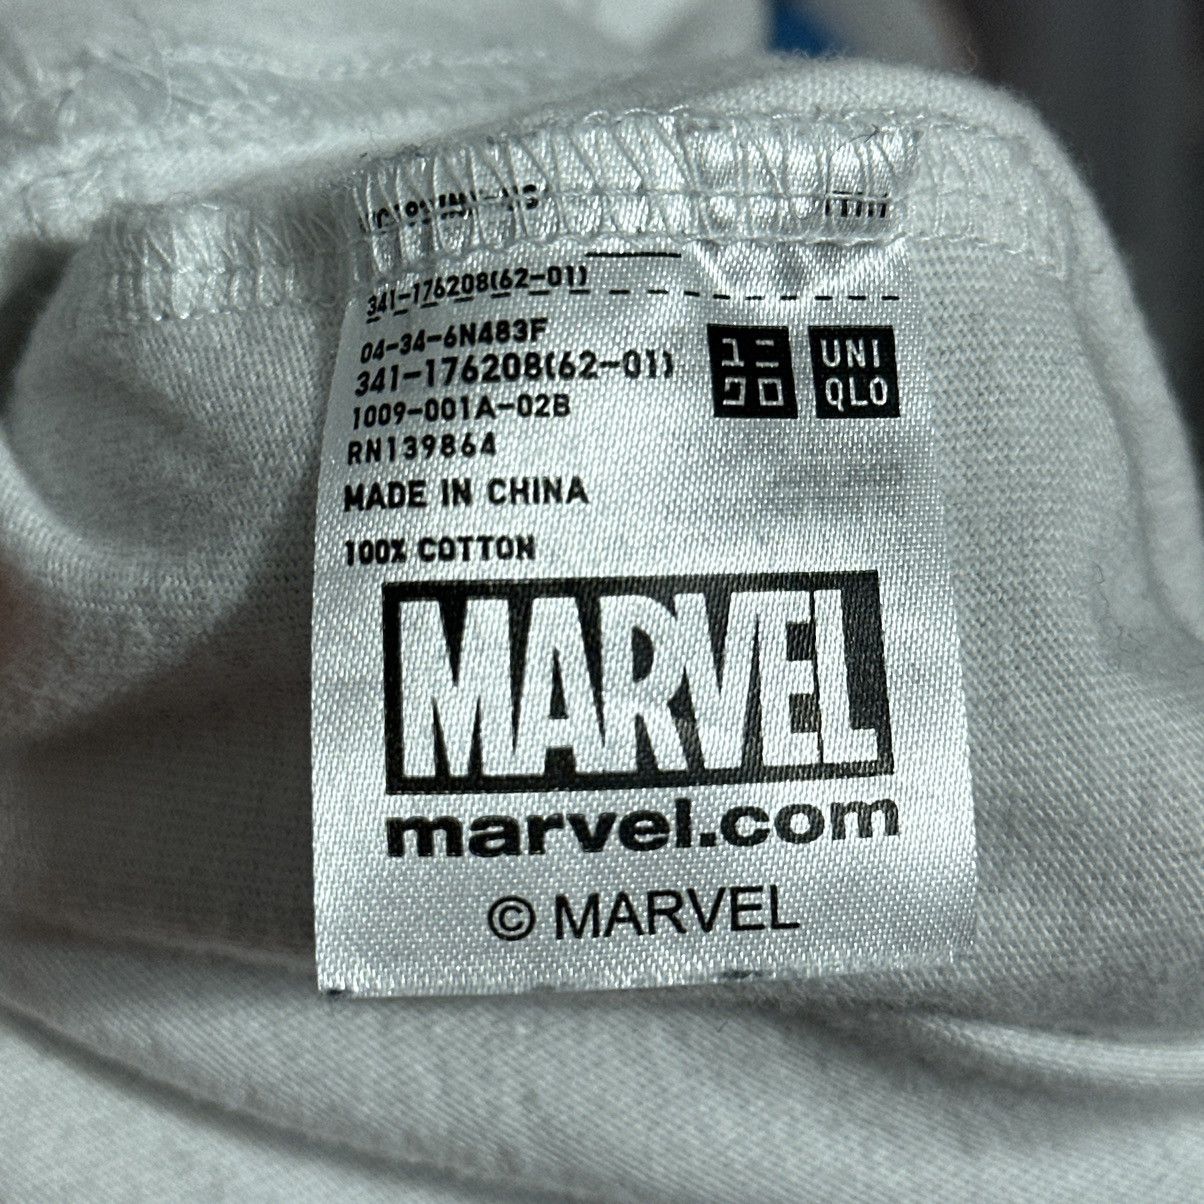 Uniqlo x Marvel Avengers Graphic T-Shirt Large - 6